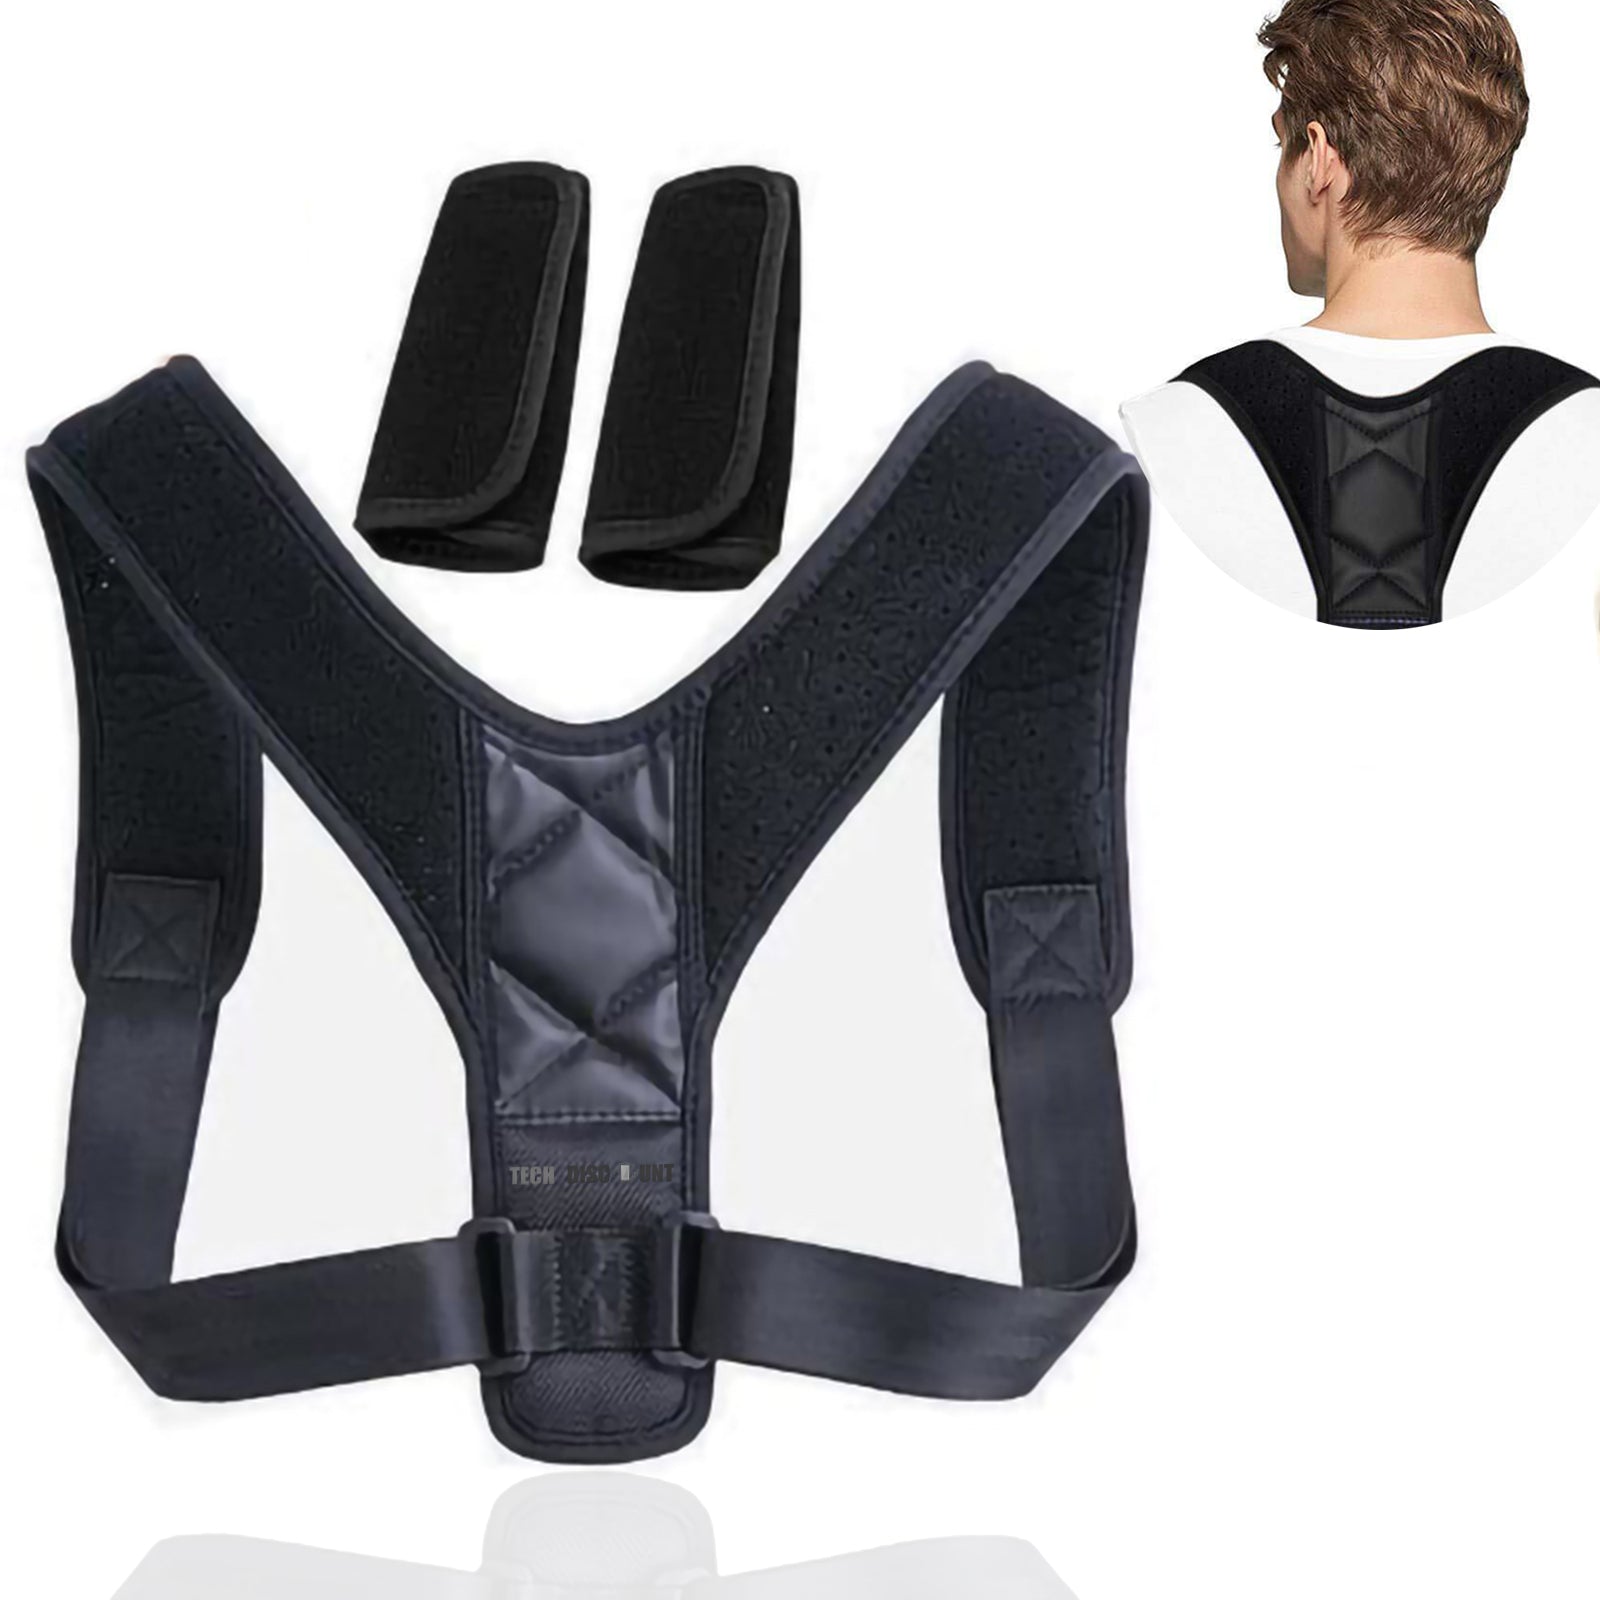 TD® Correcteur de posture ceinture dos épaules avachies support colonne vertébrale stabilité équilibre redresse unisexe lavable régl